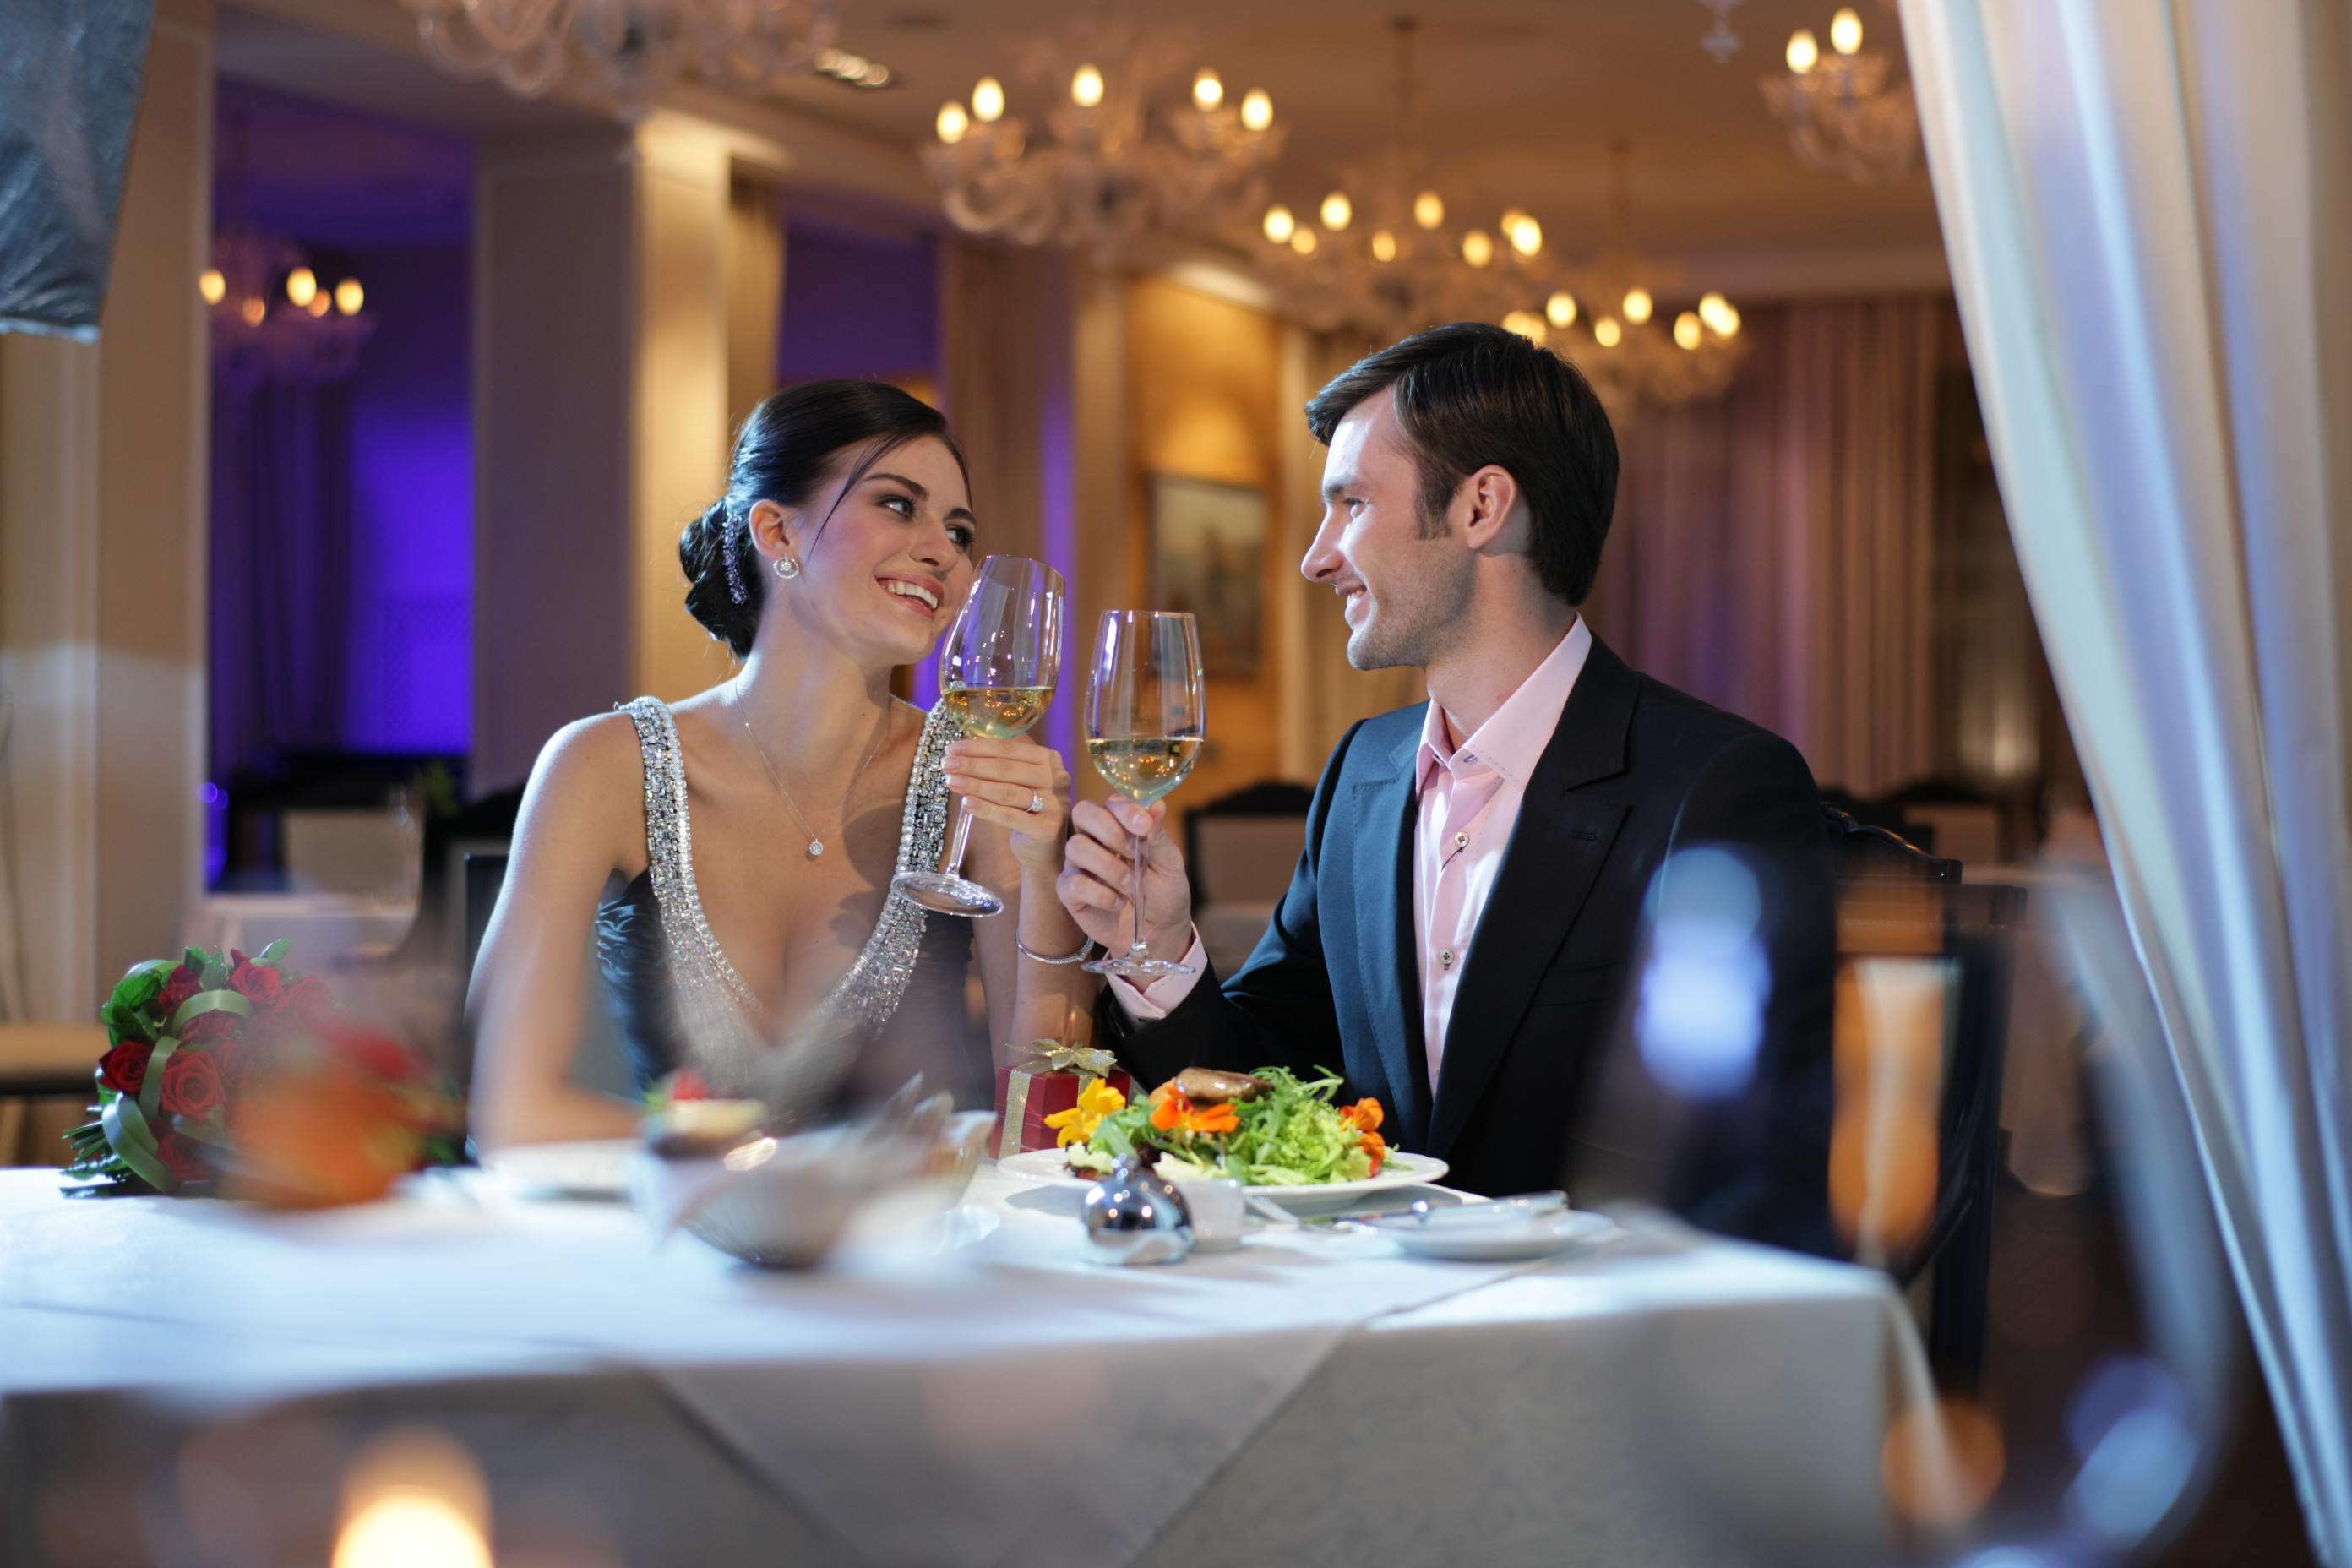 Проявить встречать. Романтический ужин в кафе. Ужин в ресторане. Пара в ресторане. Мужчина и женщина в ресторане.